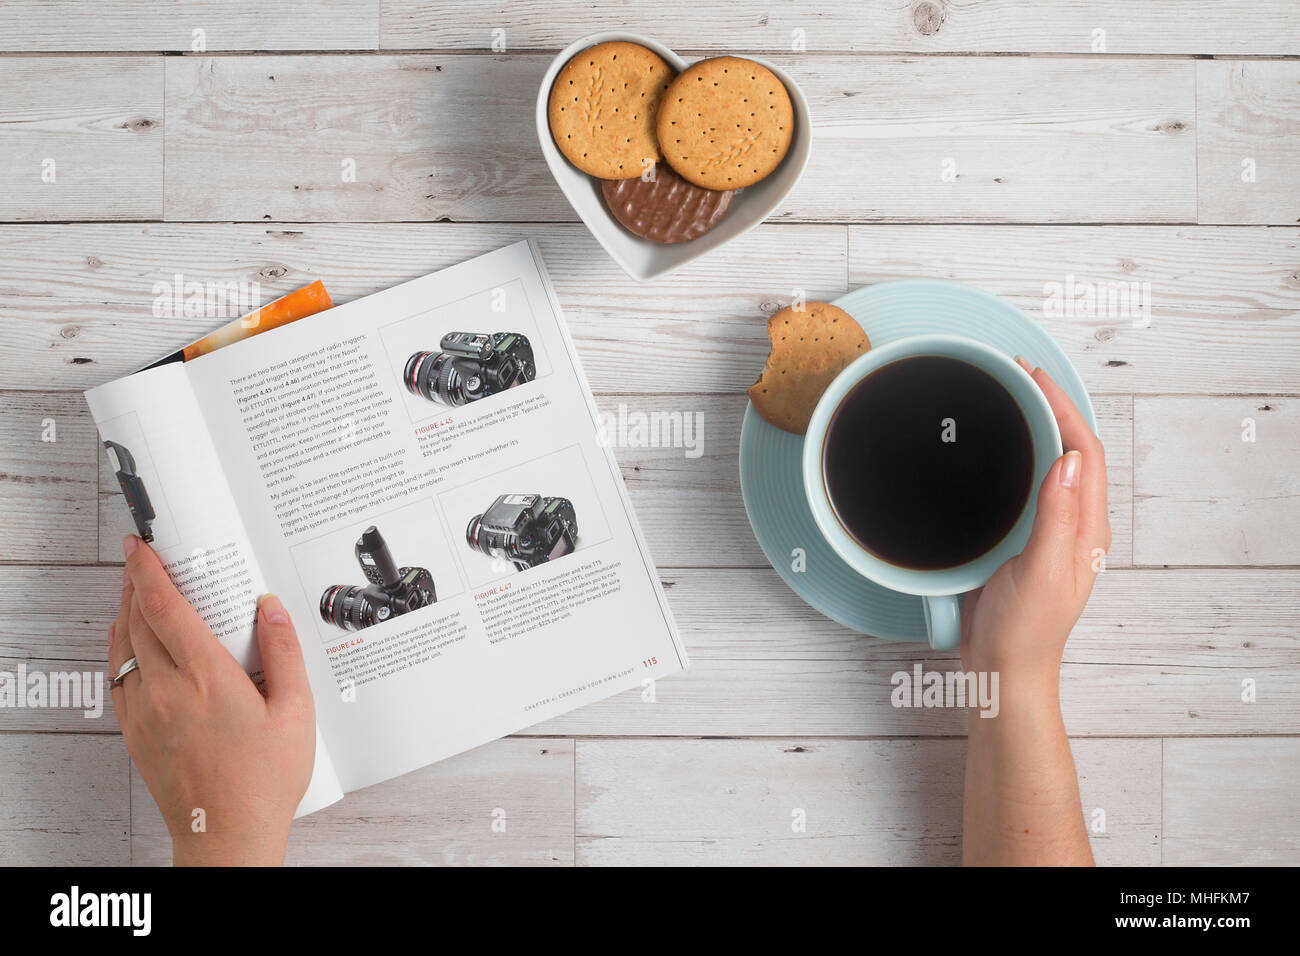 La mattina presto godendo il caffè e la lettura sulla fotografia Foto Stock